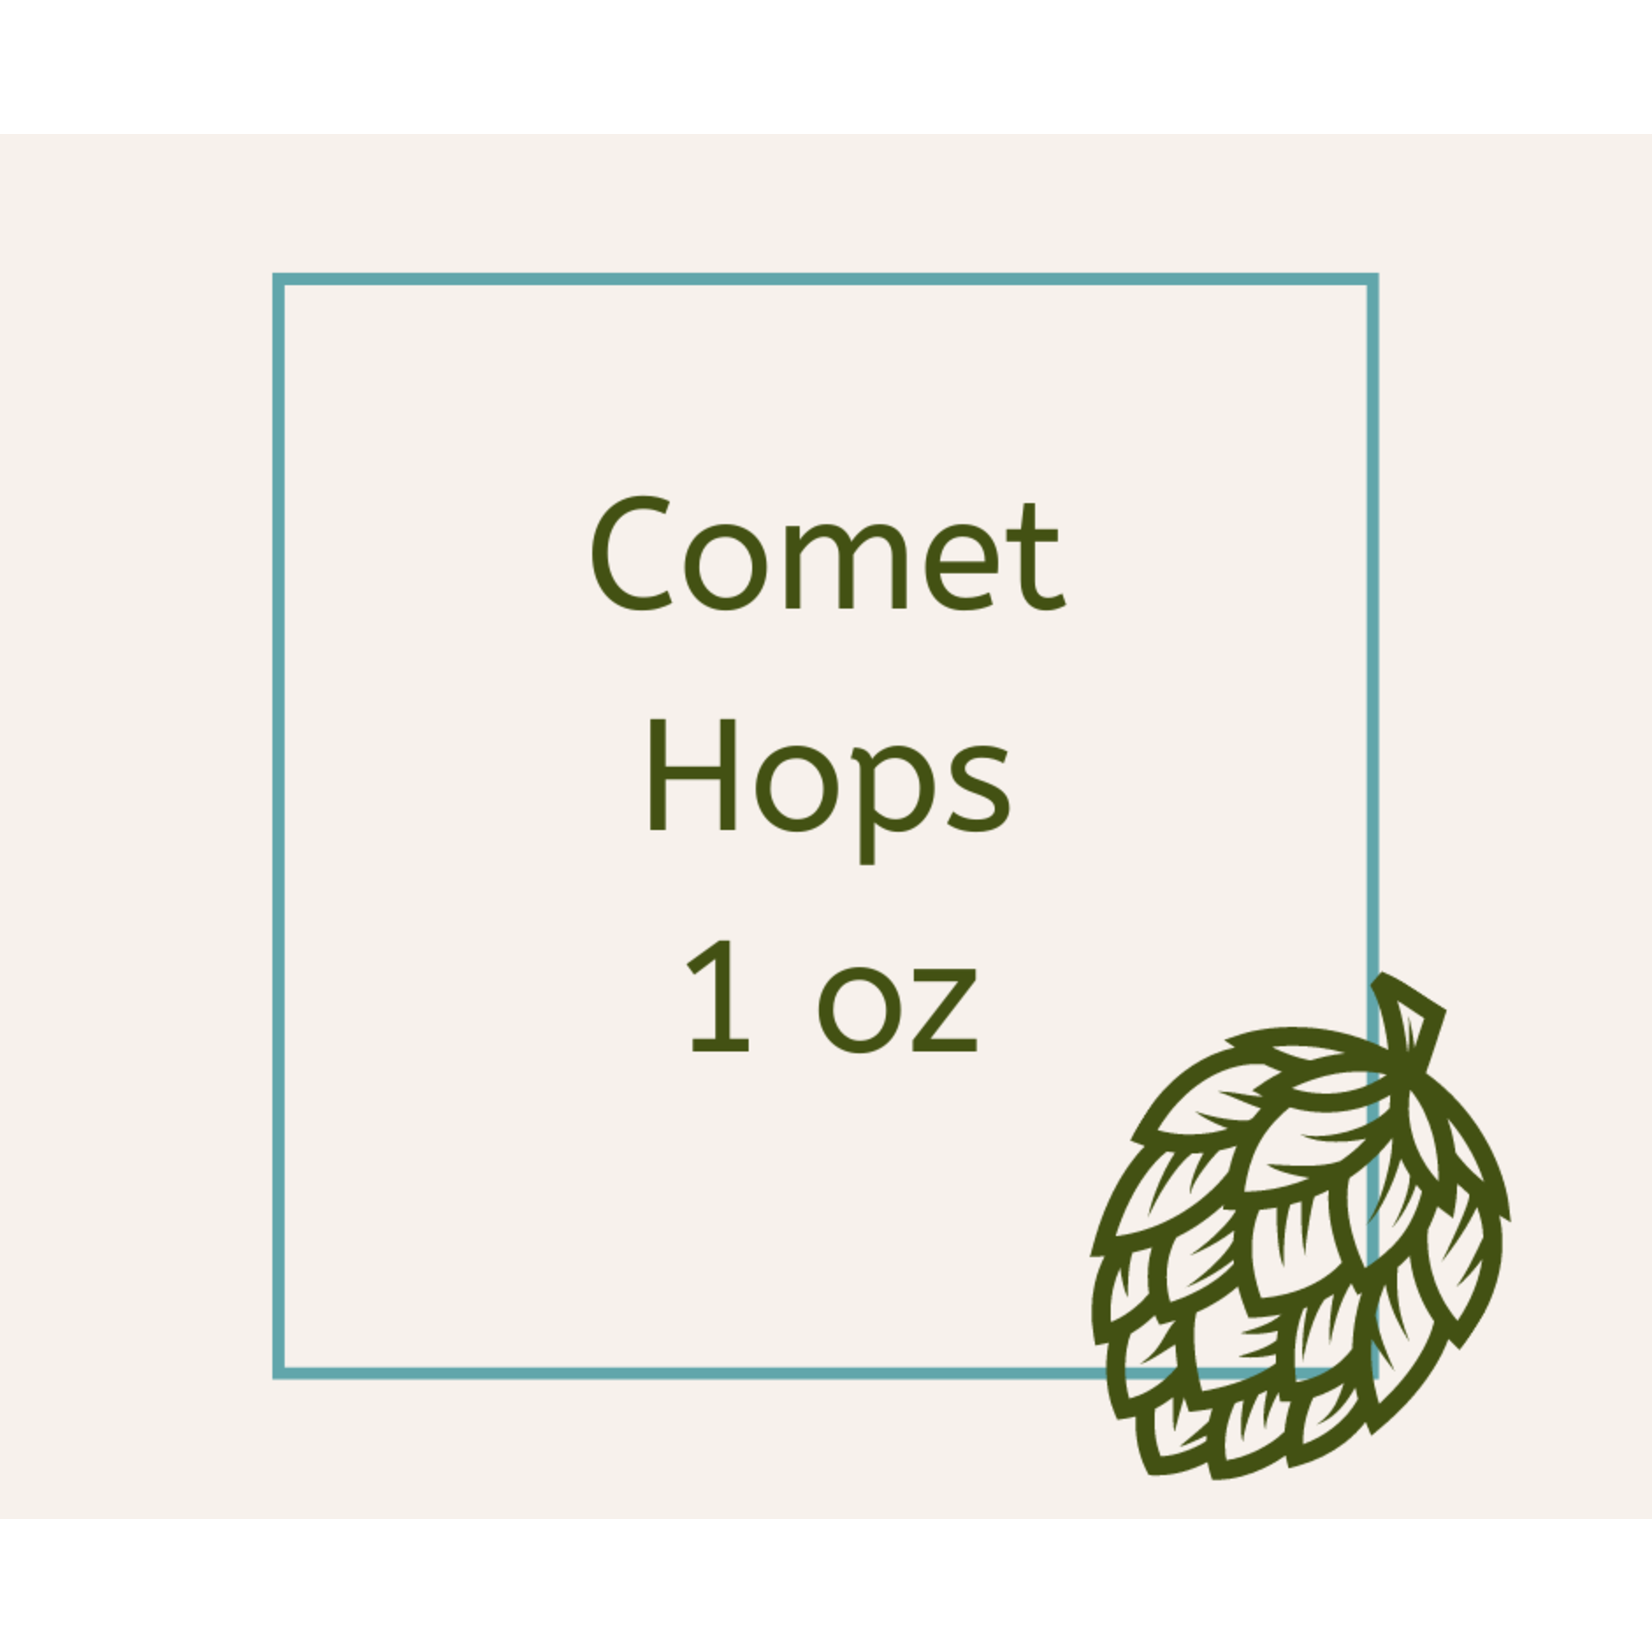 Comet Hops 1 oz